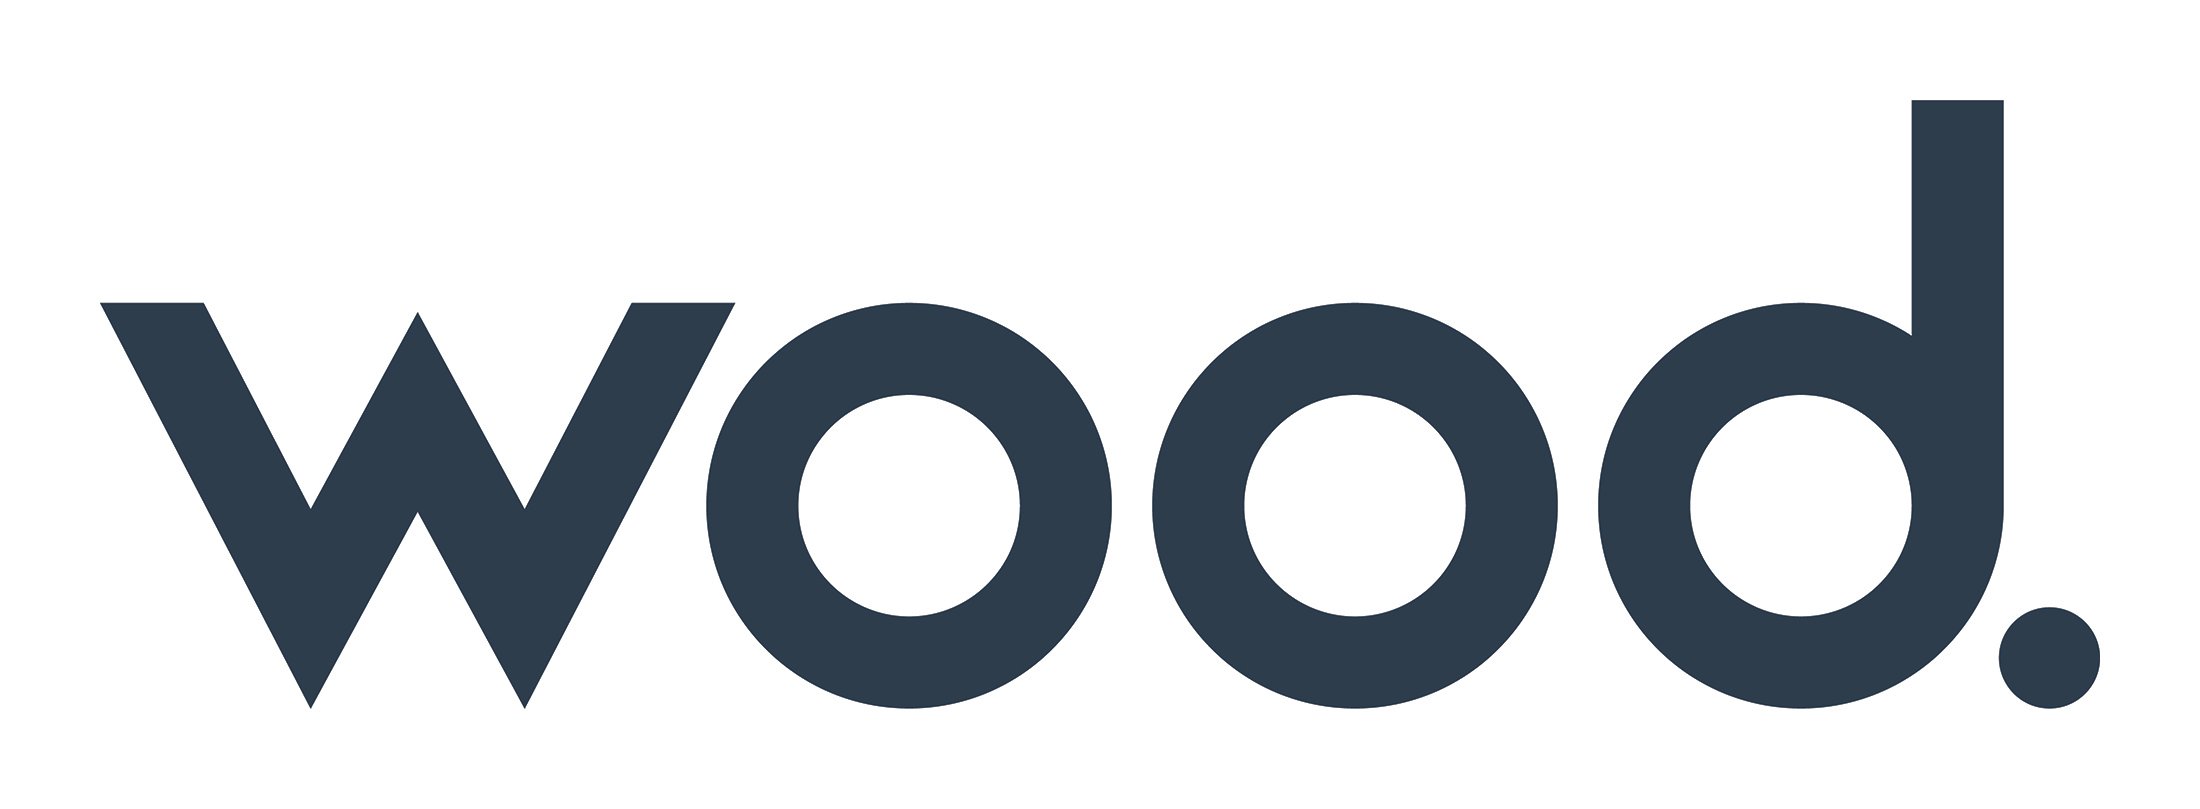 Wood_logo_grey.jpg